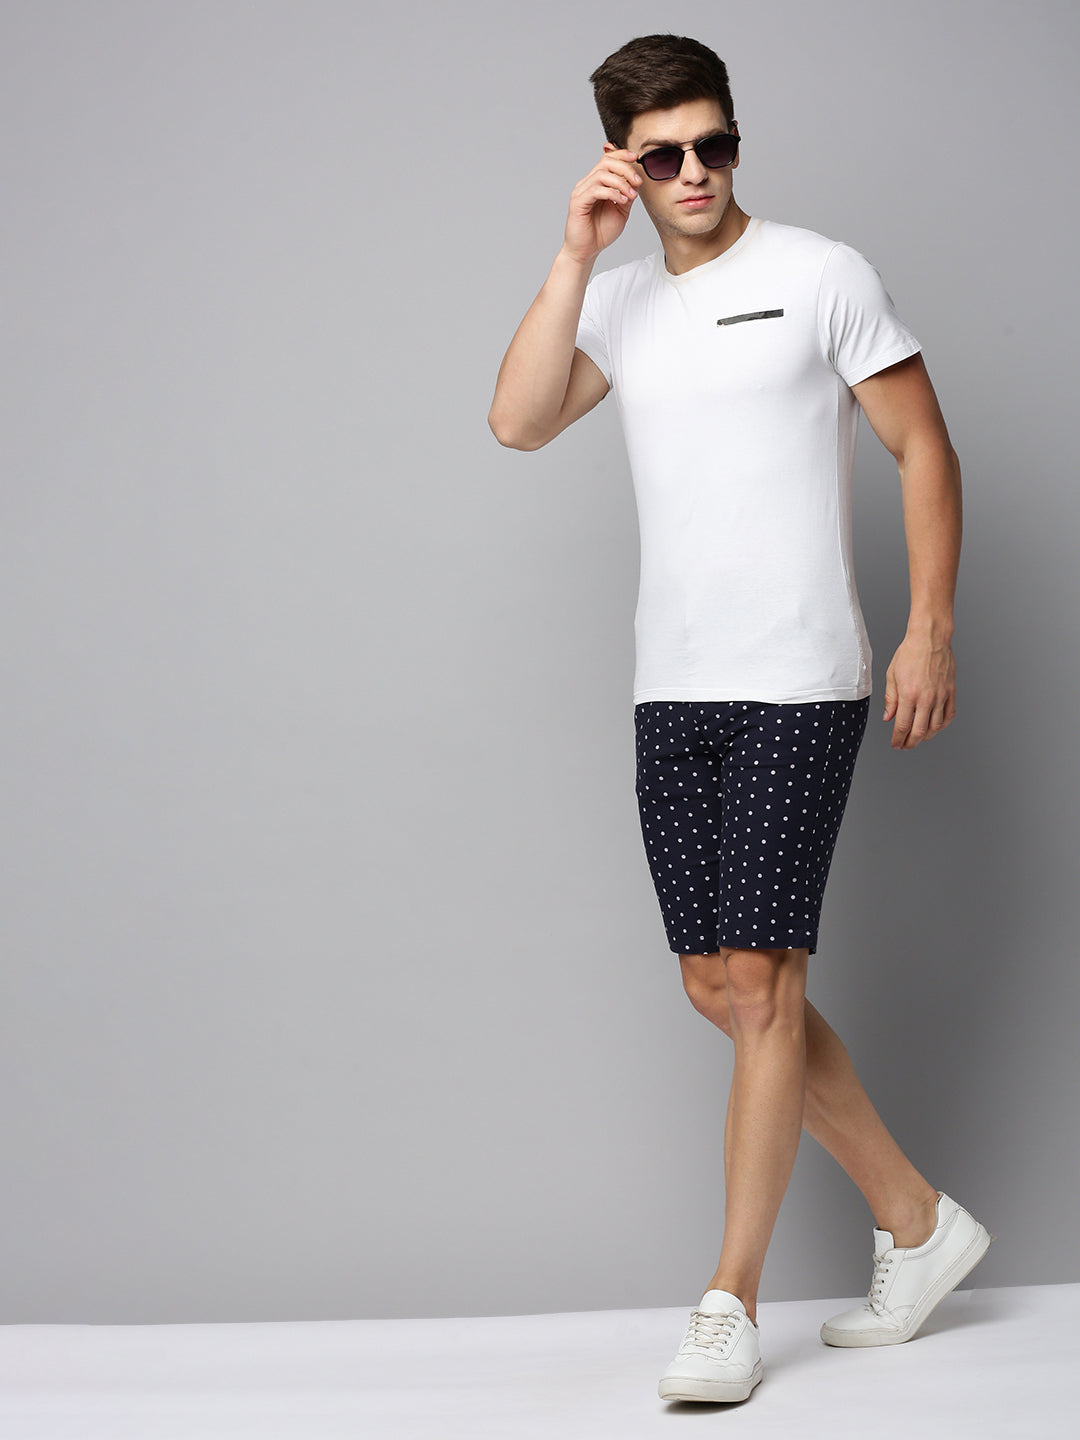 Men Navy Printed Casual Shorts